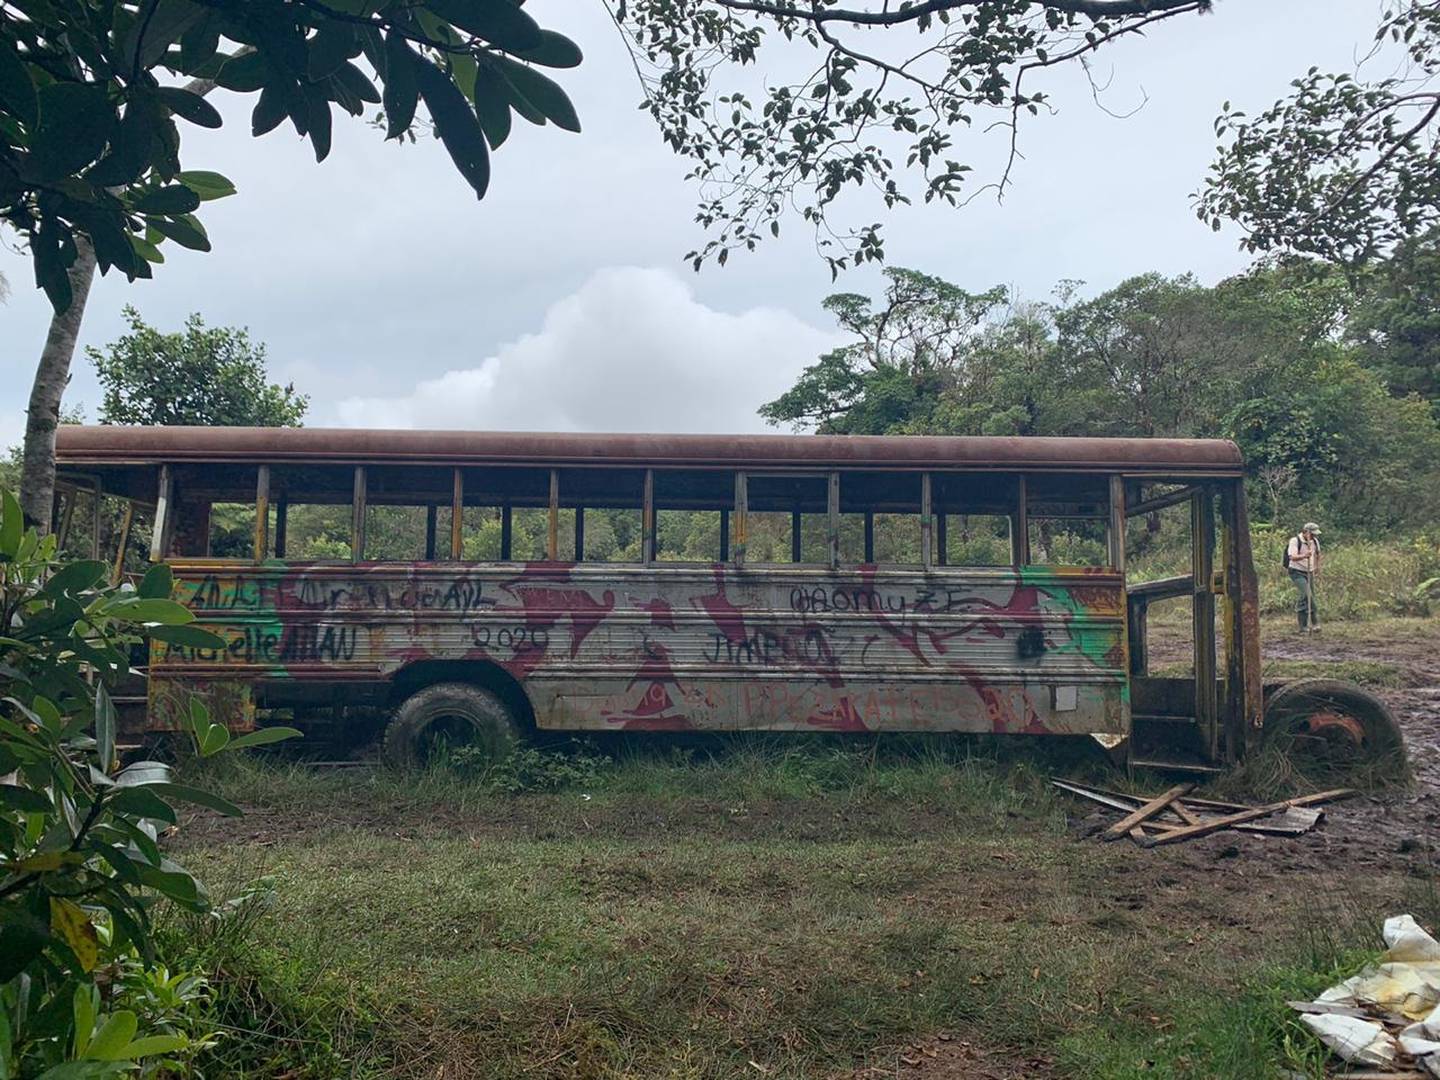 Sinac ordena sacar del parque nacional Braulio Carrillo autobús abandonado. Foto Sinac.